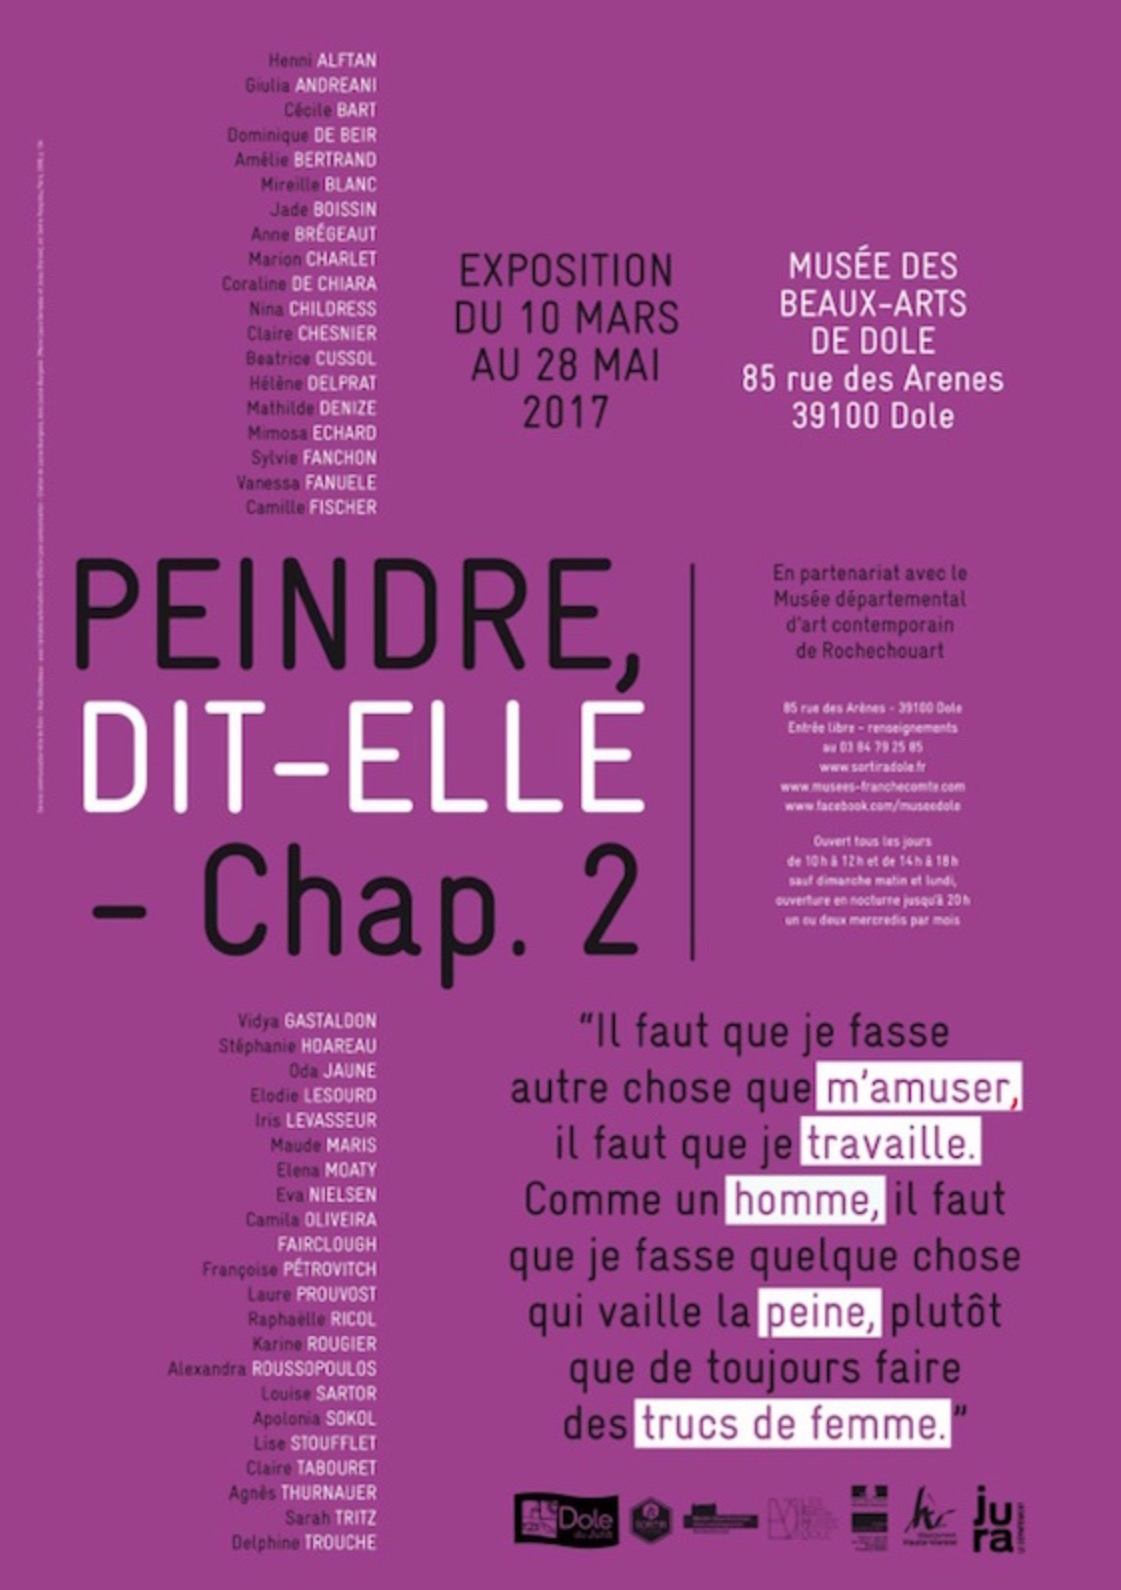 [EXPO] 10.03→28.05 – PEINDRE DIT-ELLE (CHAP.2) – MUSÉE DES BEAUX-ARTS DE DOLE